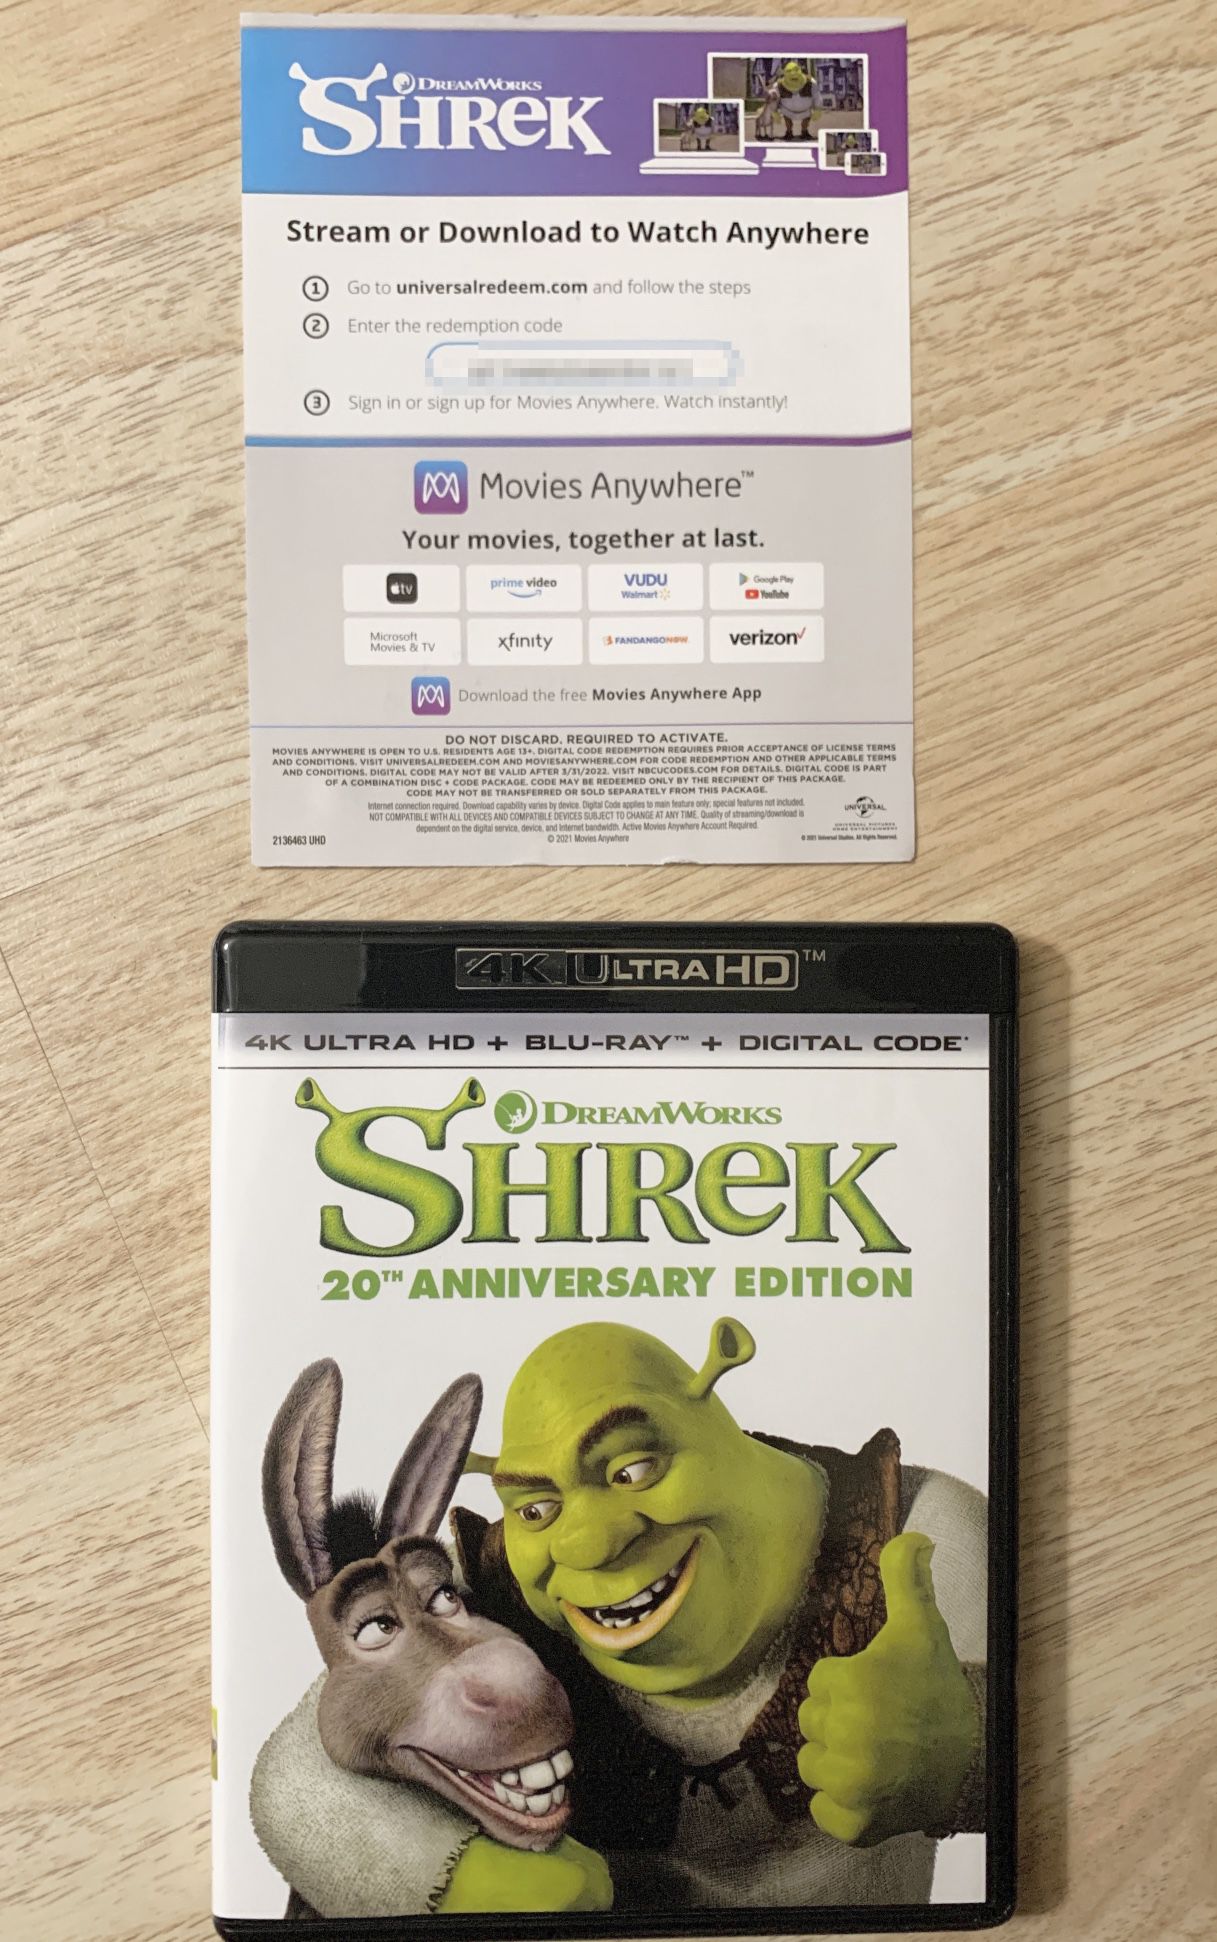 Shrek - Digital Code Only